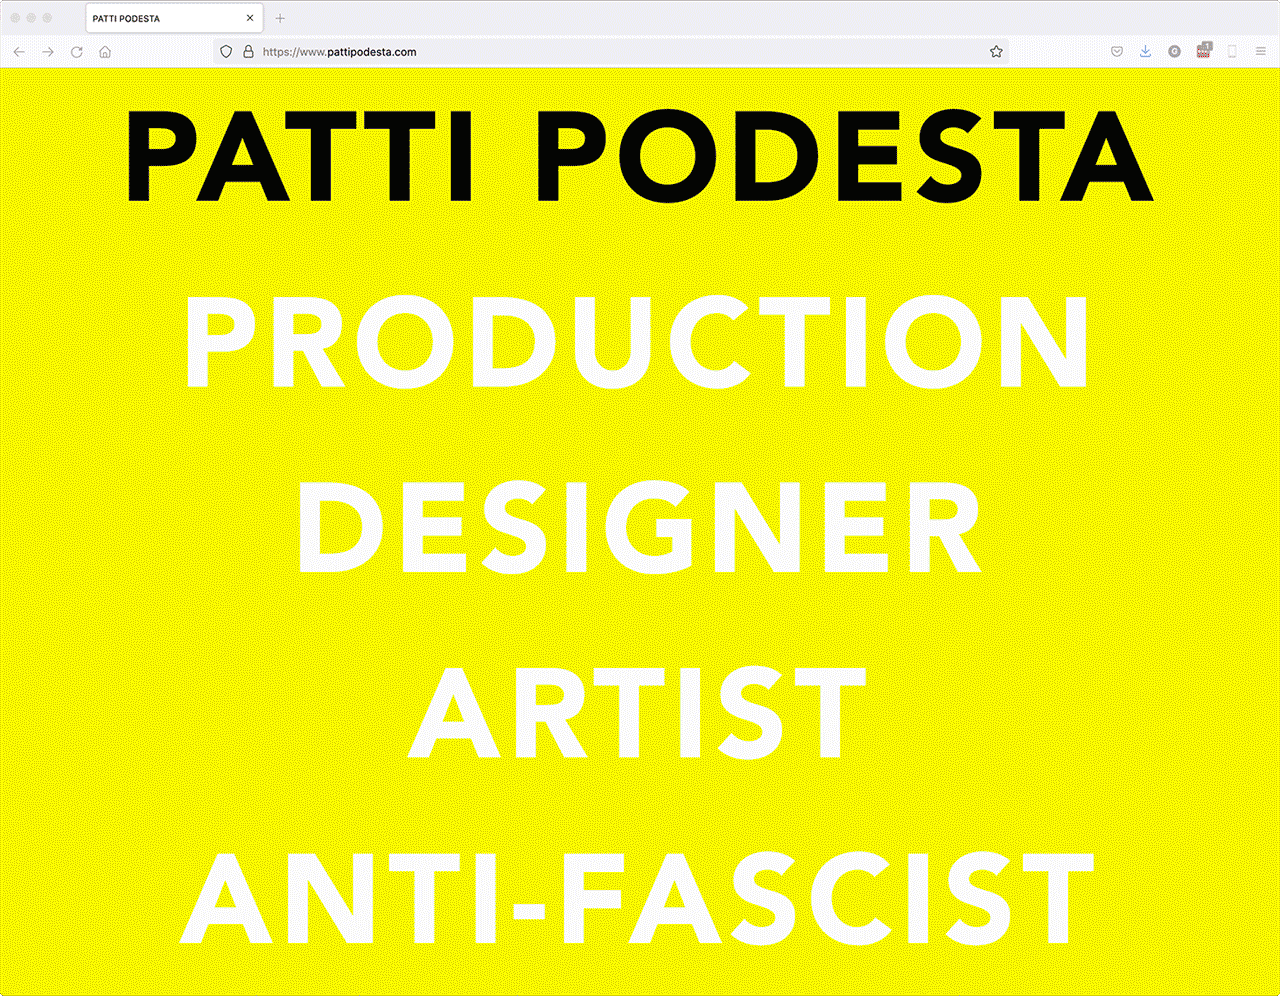 Animated screencaps of pattipodesta.com website